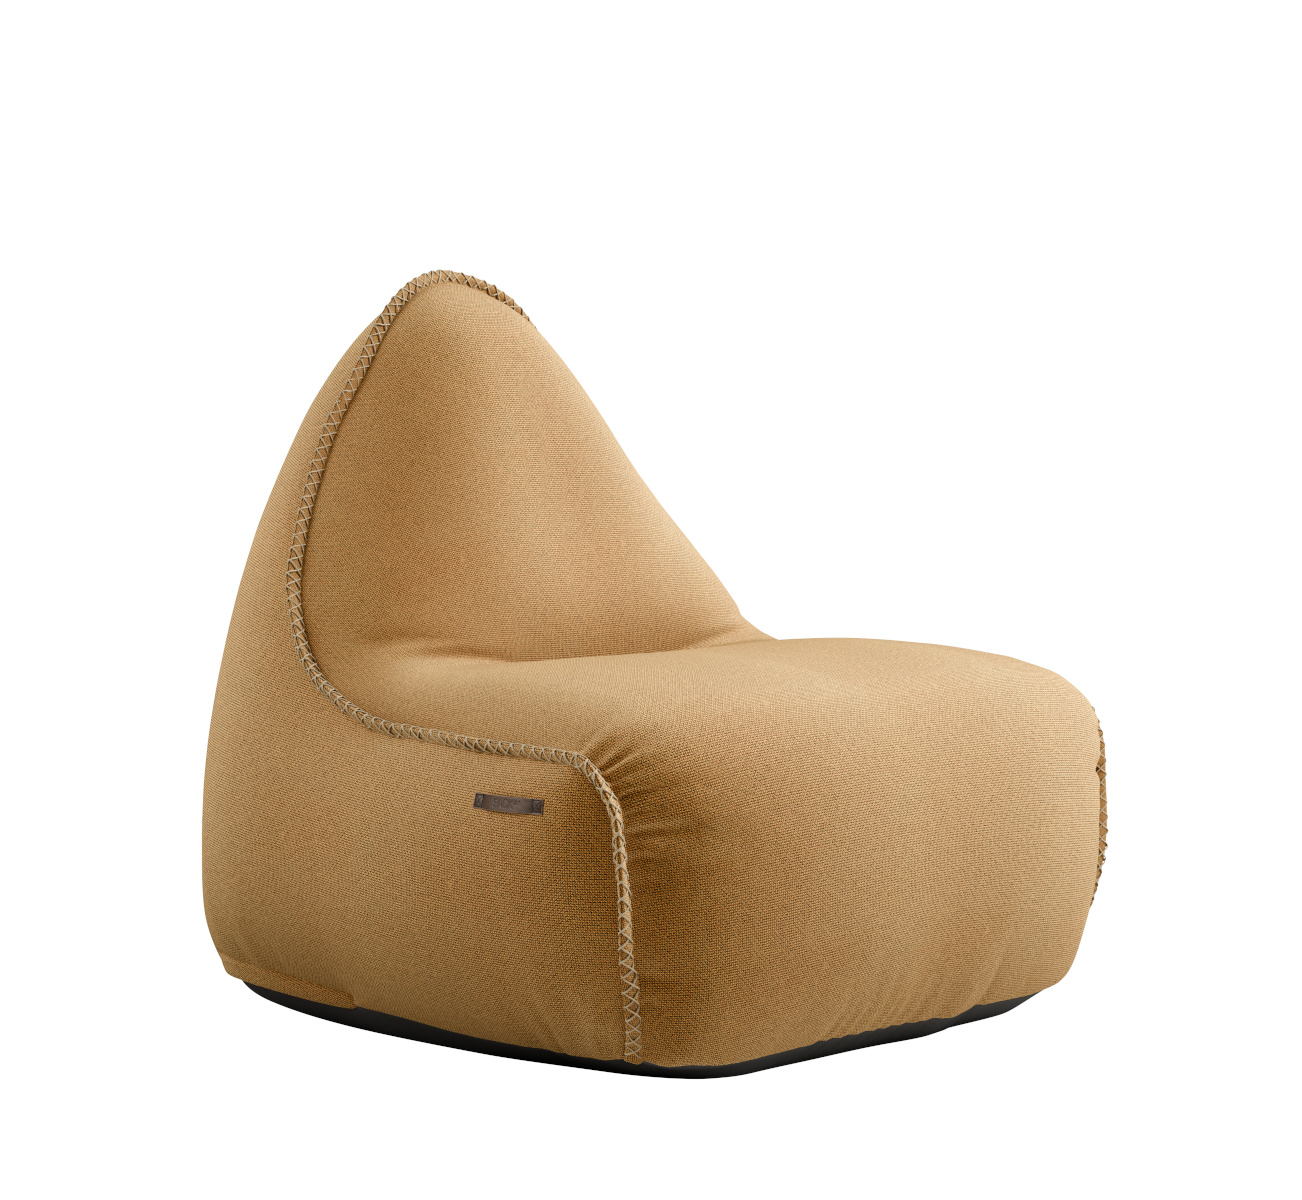 Cura Lounge Chair, dunkelblau